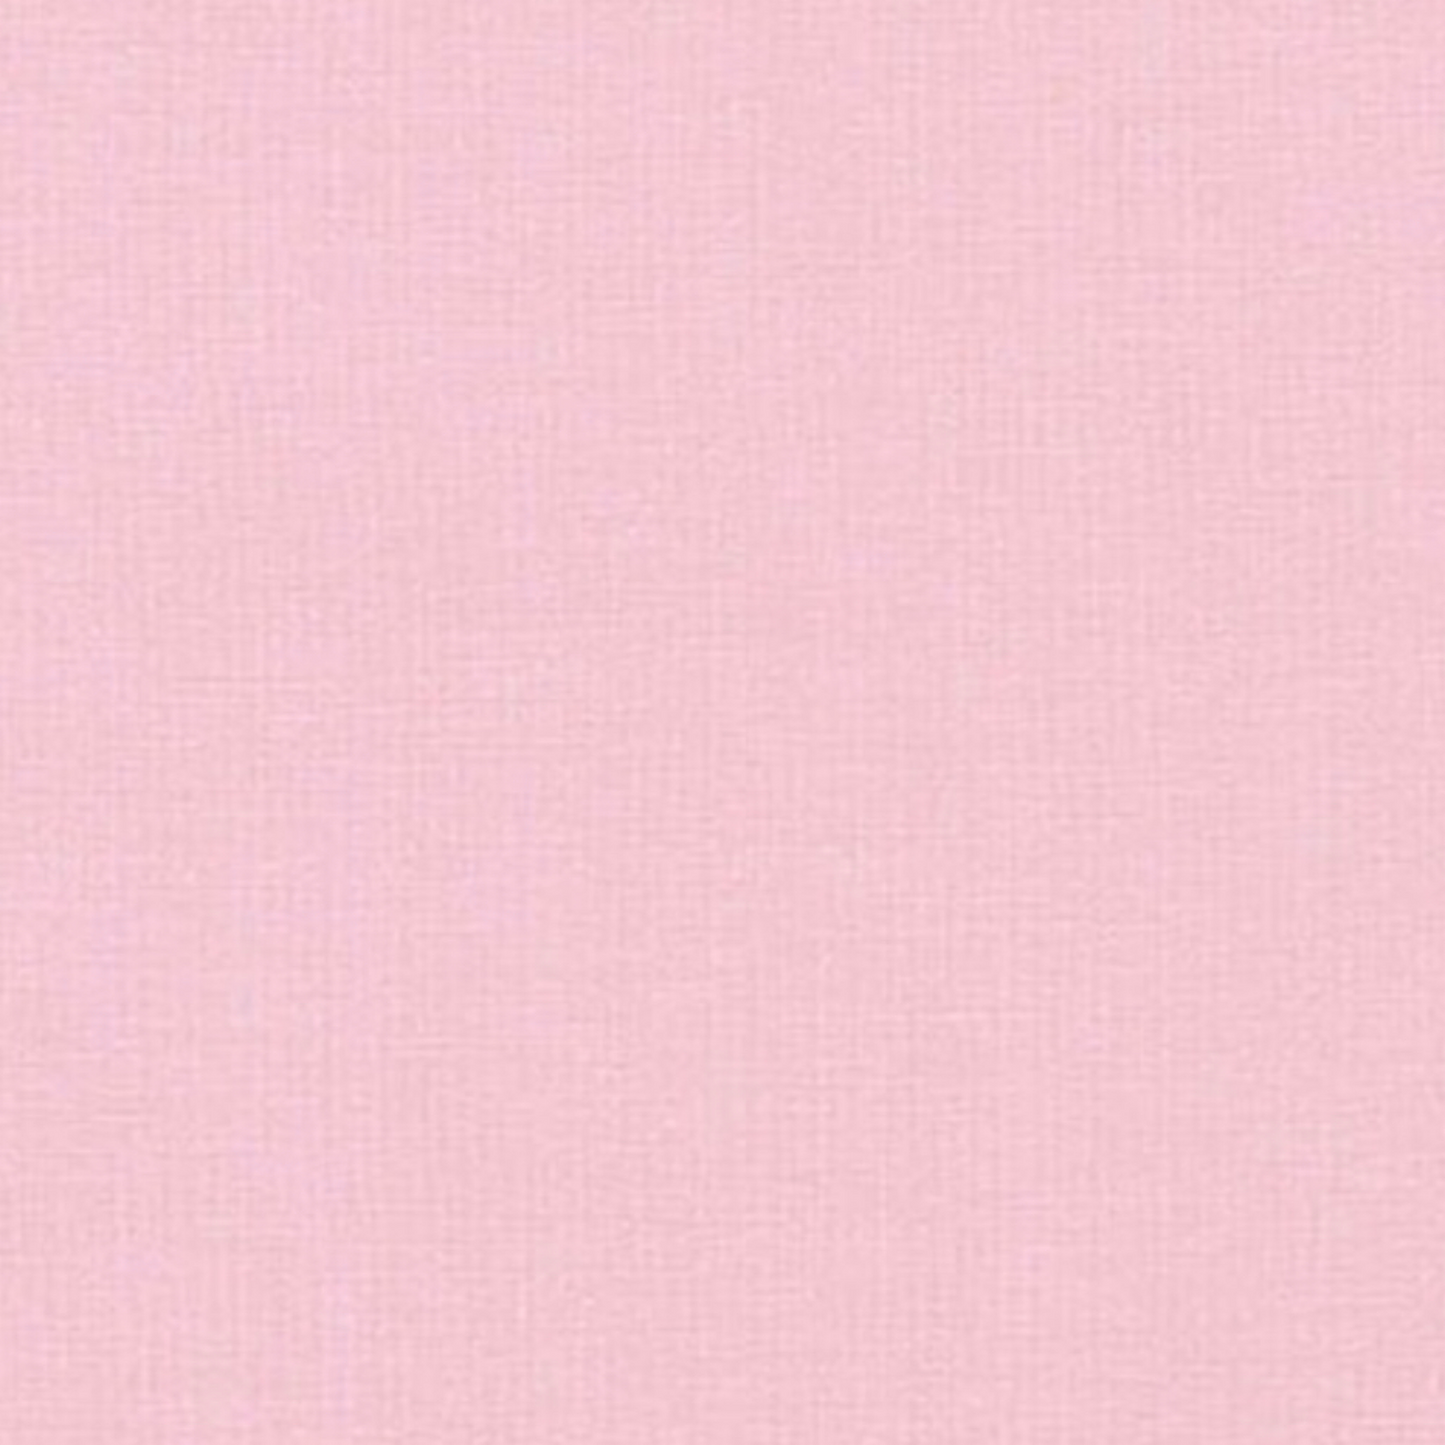 Essex Linen in Blossom by Robert Kaufman - Cotton Fabric - Rosie's Craft Shop Ltd